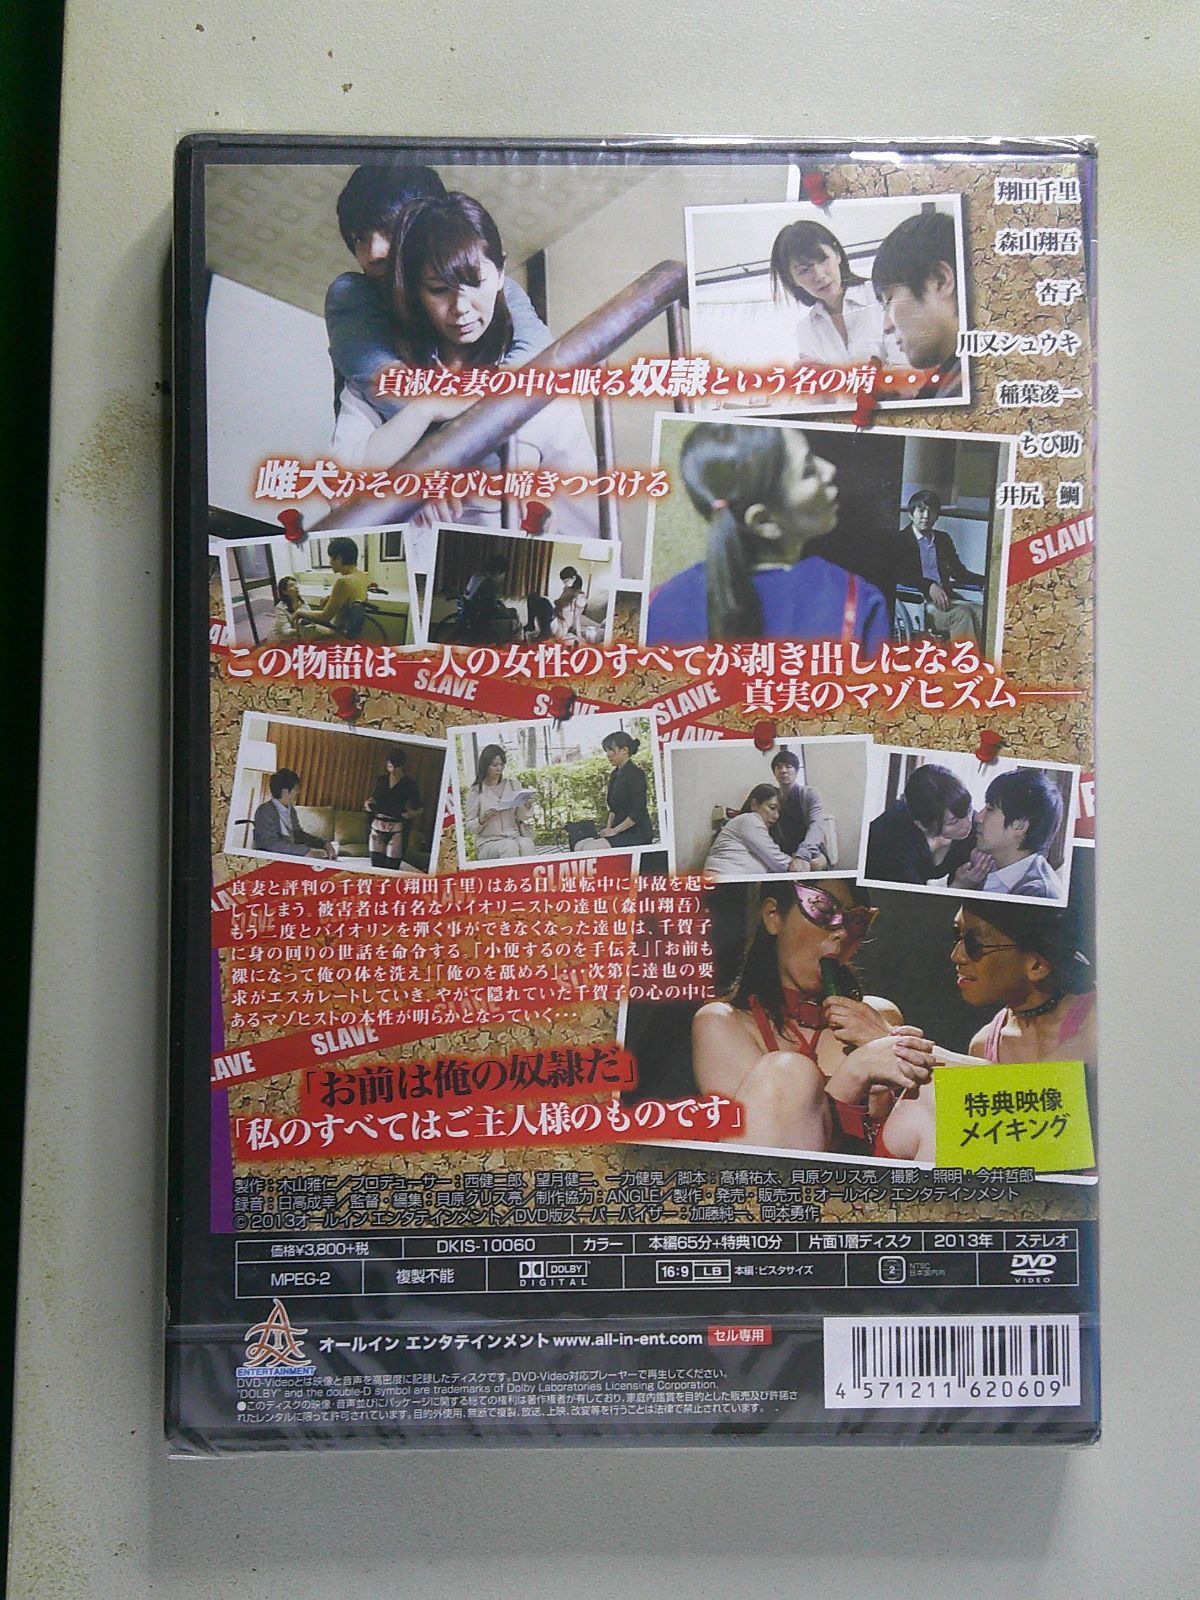 セル版DVD DKIS-10060 奴隷 翔田千里,森山翔吾,杏子,貝原クリス亮（監督、脚本、編集）